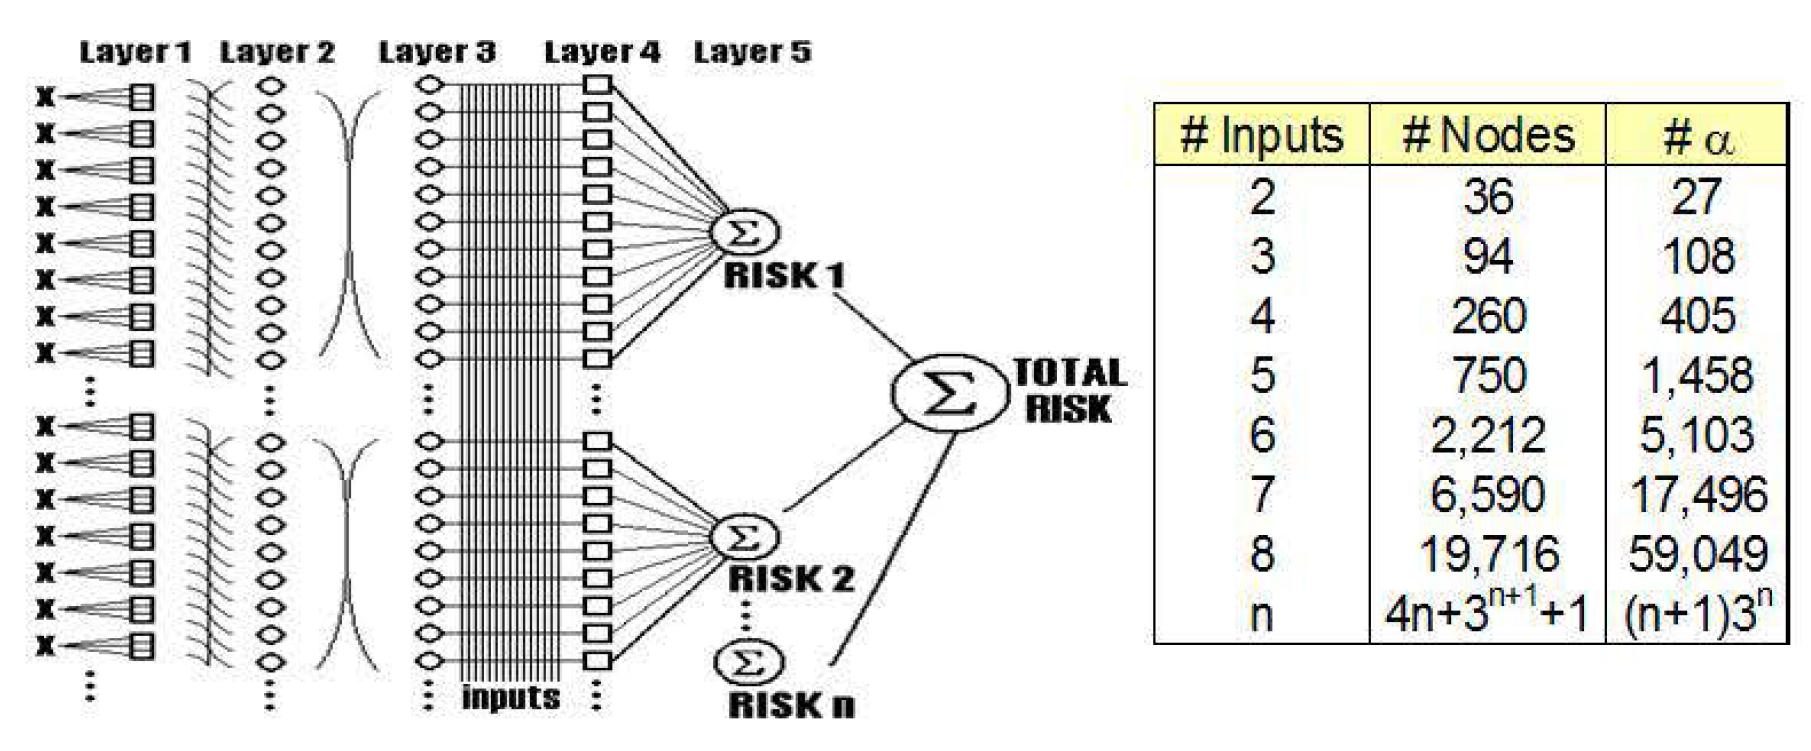 FORAS 모델의 계층 구성도 및 복잡성(노드, 파라미터)